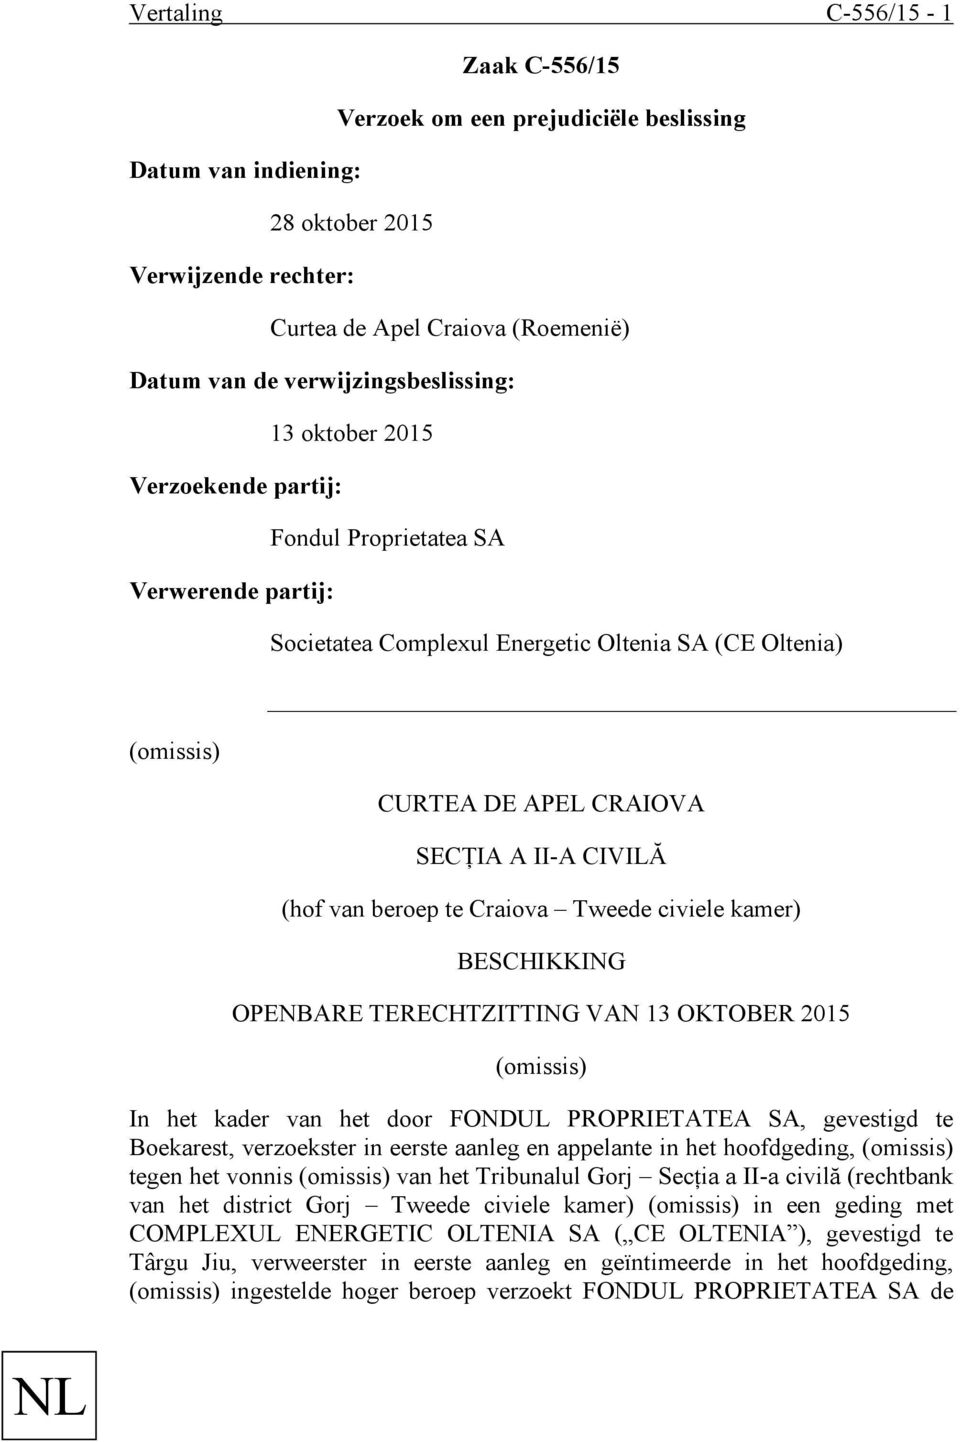 II-A CIVILĂ (hof van beroep te Craiova Tweede civiele kamer) BESCHIKKING OPENBARE TERECHTZITTING VAN 13 OKTOBER 2015 (omissis) In het kader van het door FONDUL PROPRIETATEA SA, gevestigd te